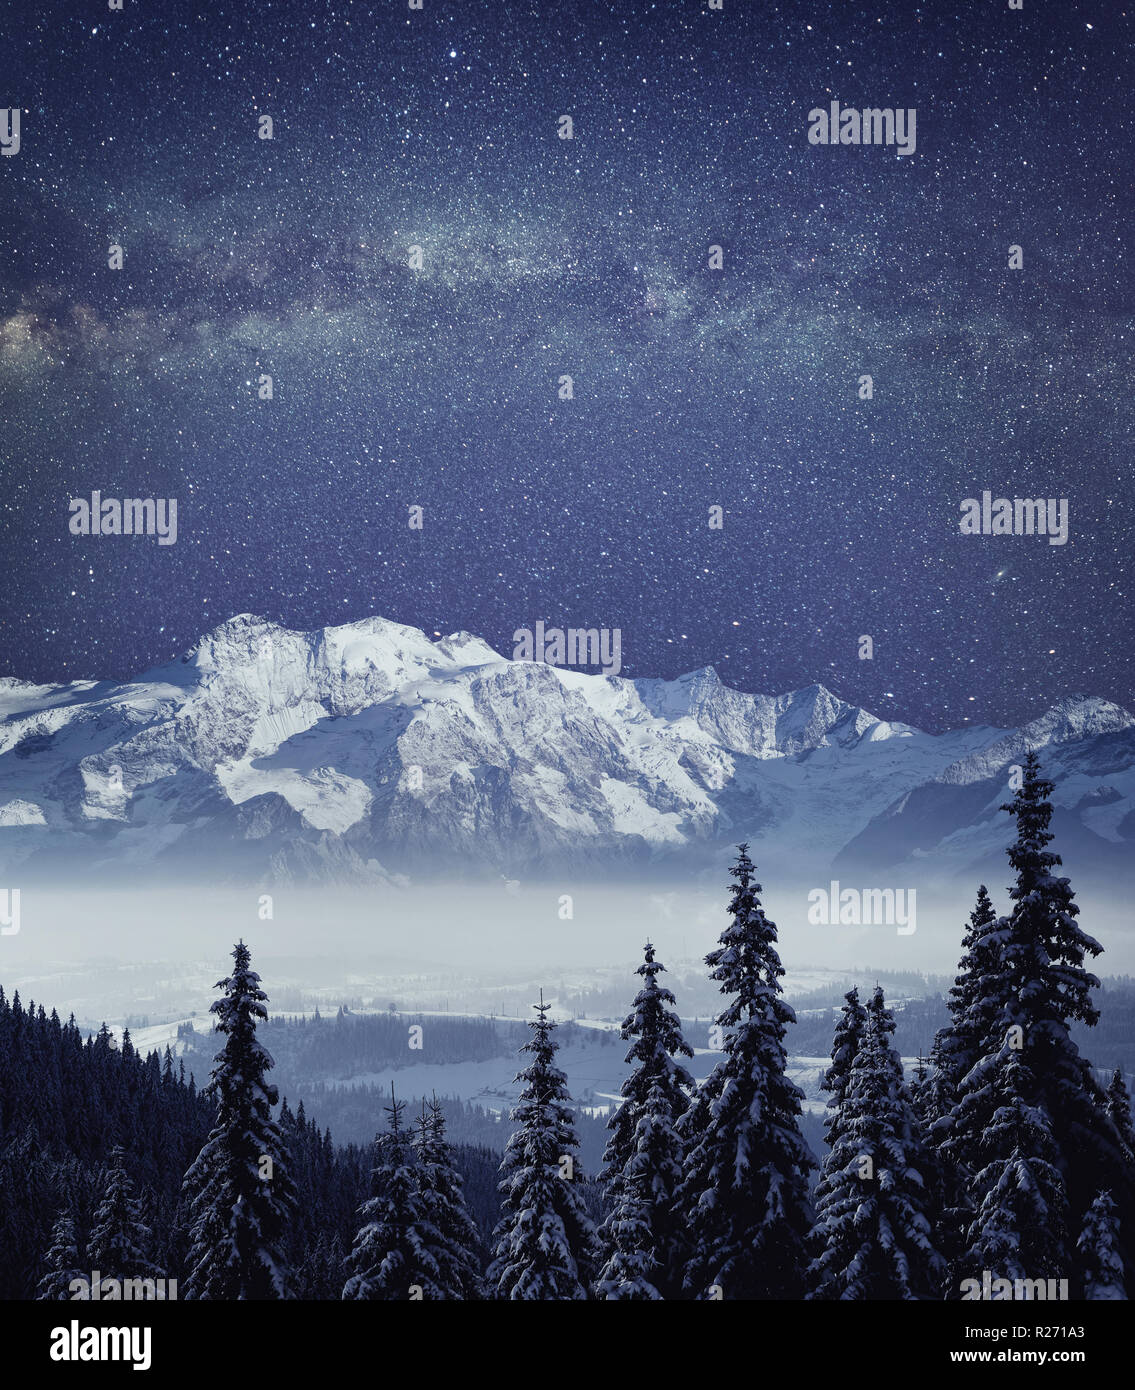 Nacht mountain Winterlandschaft. Tiefe Nacht Himmel mit Galaxie Milchstraße hochauflösende Panorama. Stockfoto